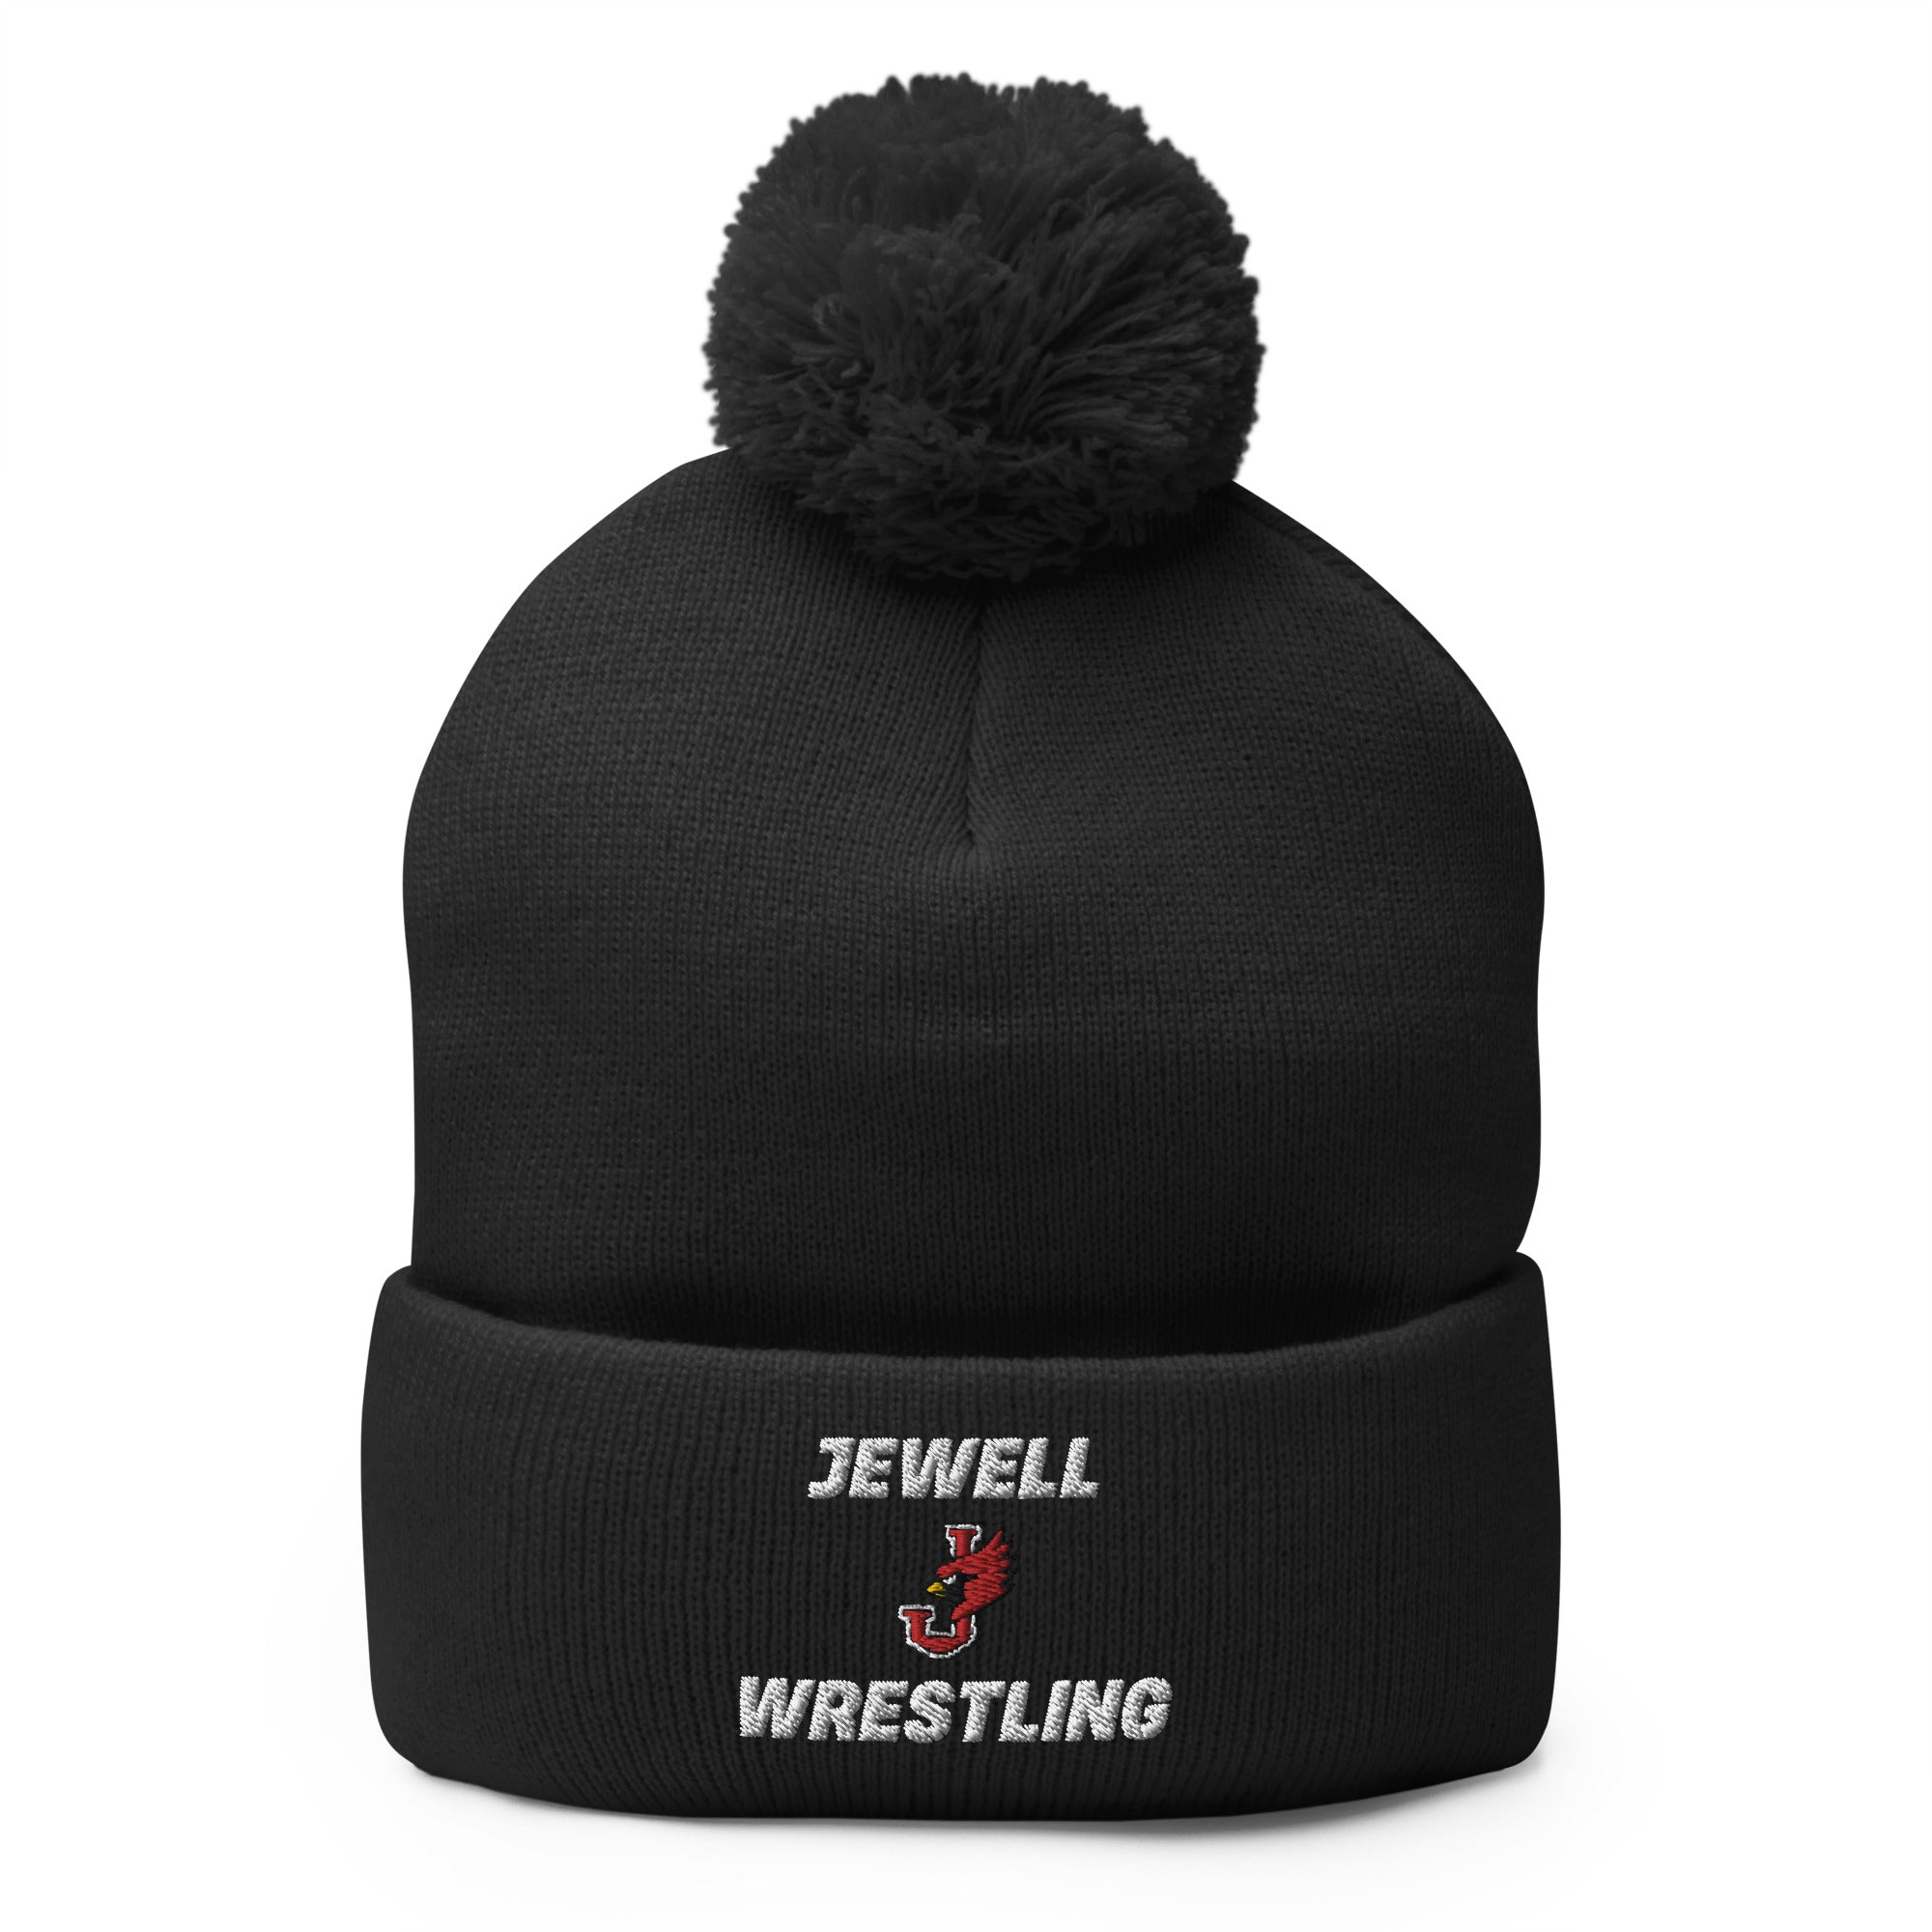 William Jewell Wrestling Pom-Pom Knit Cap